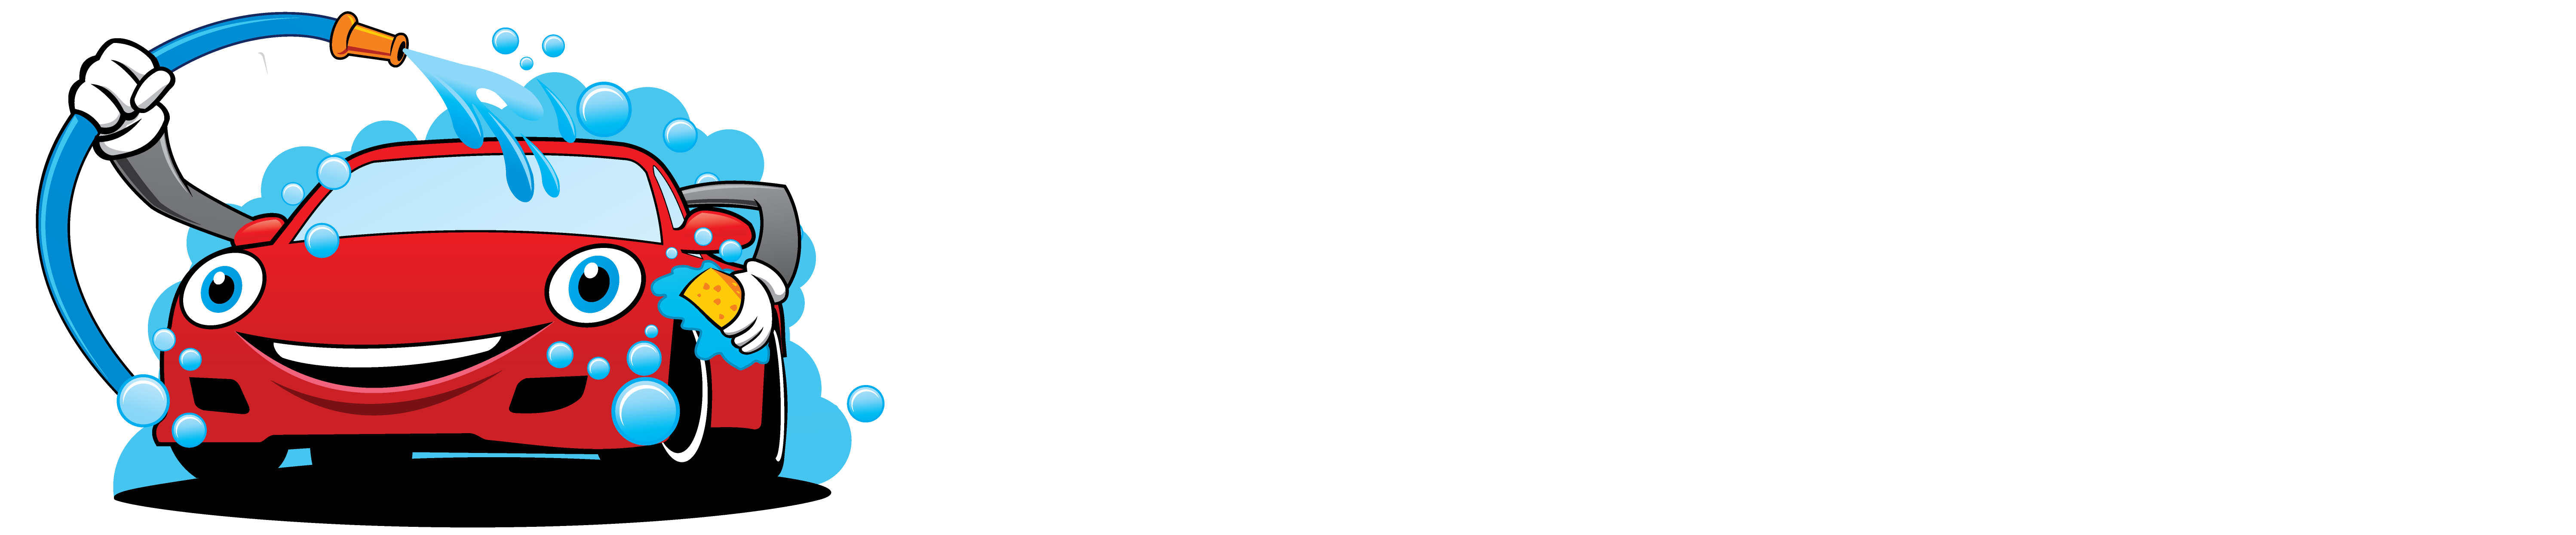 Cobourg Car Wash & Auto Detailing